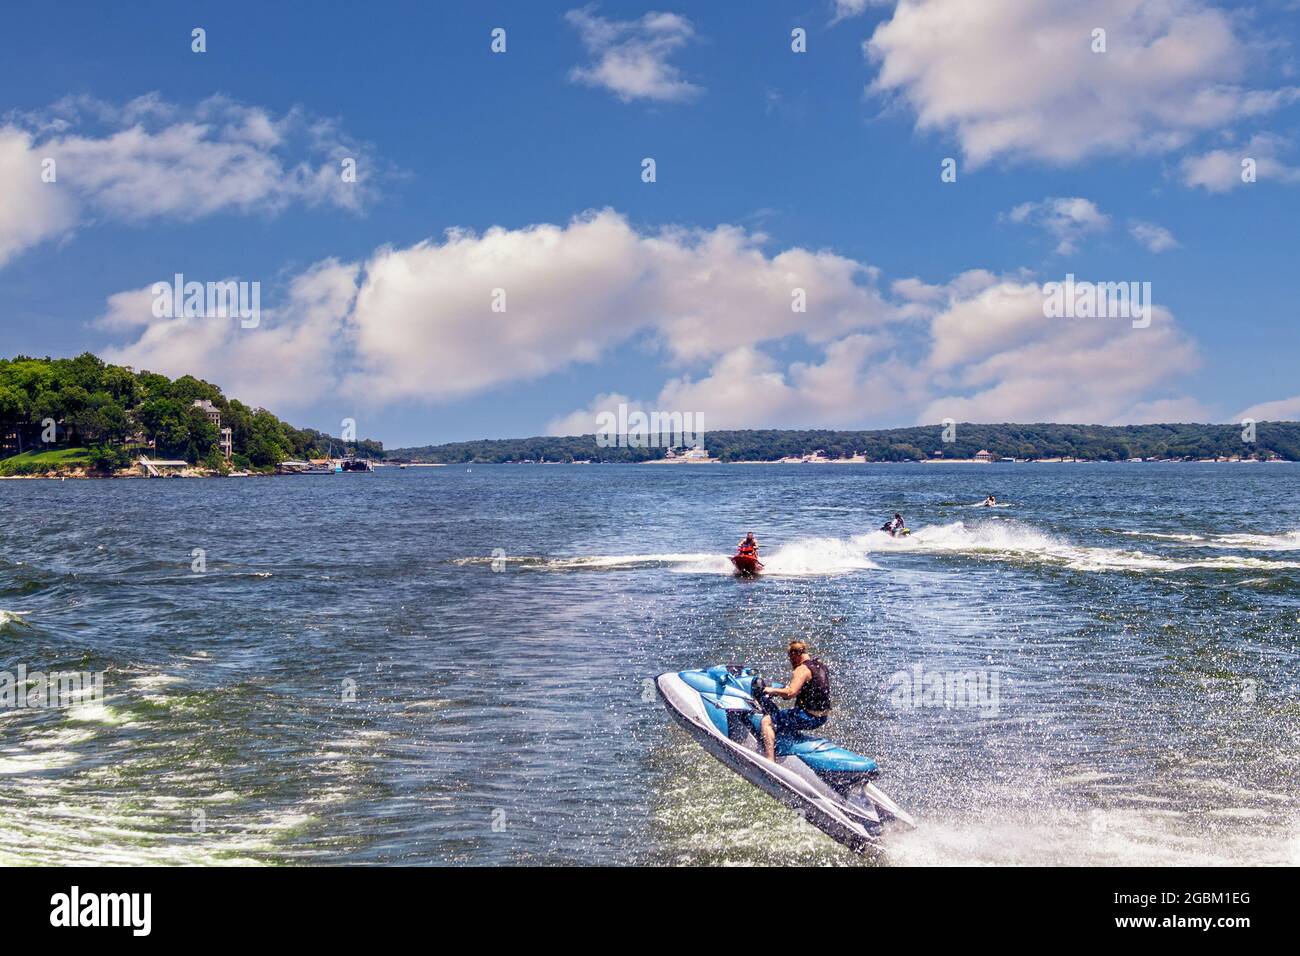 Persone su Personal watercraft salto scia di barca sul lago con case a riva in lontananza. Foto Stock